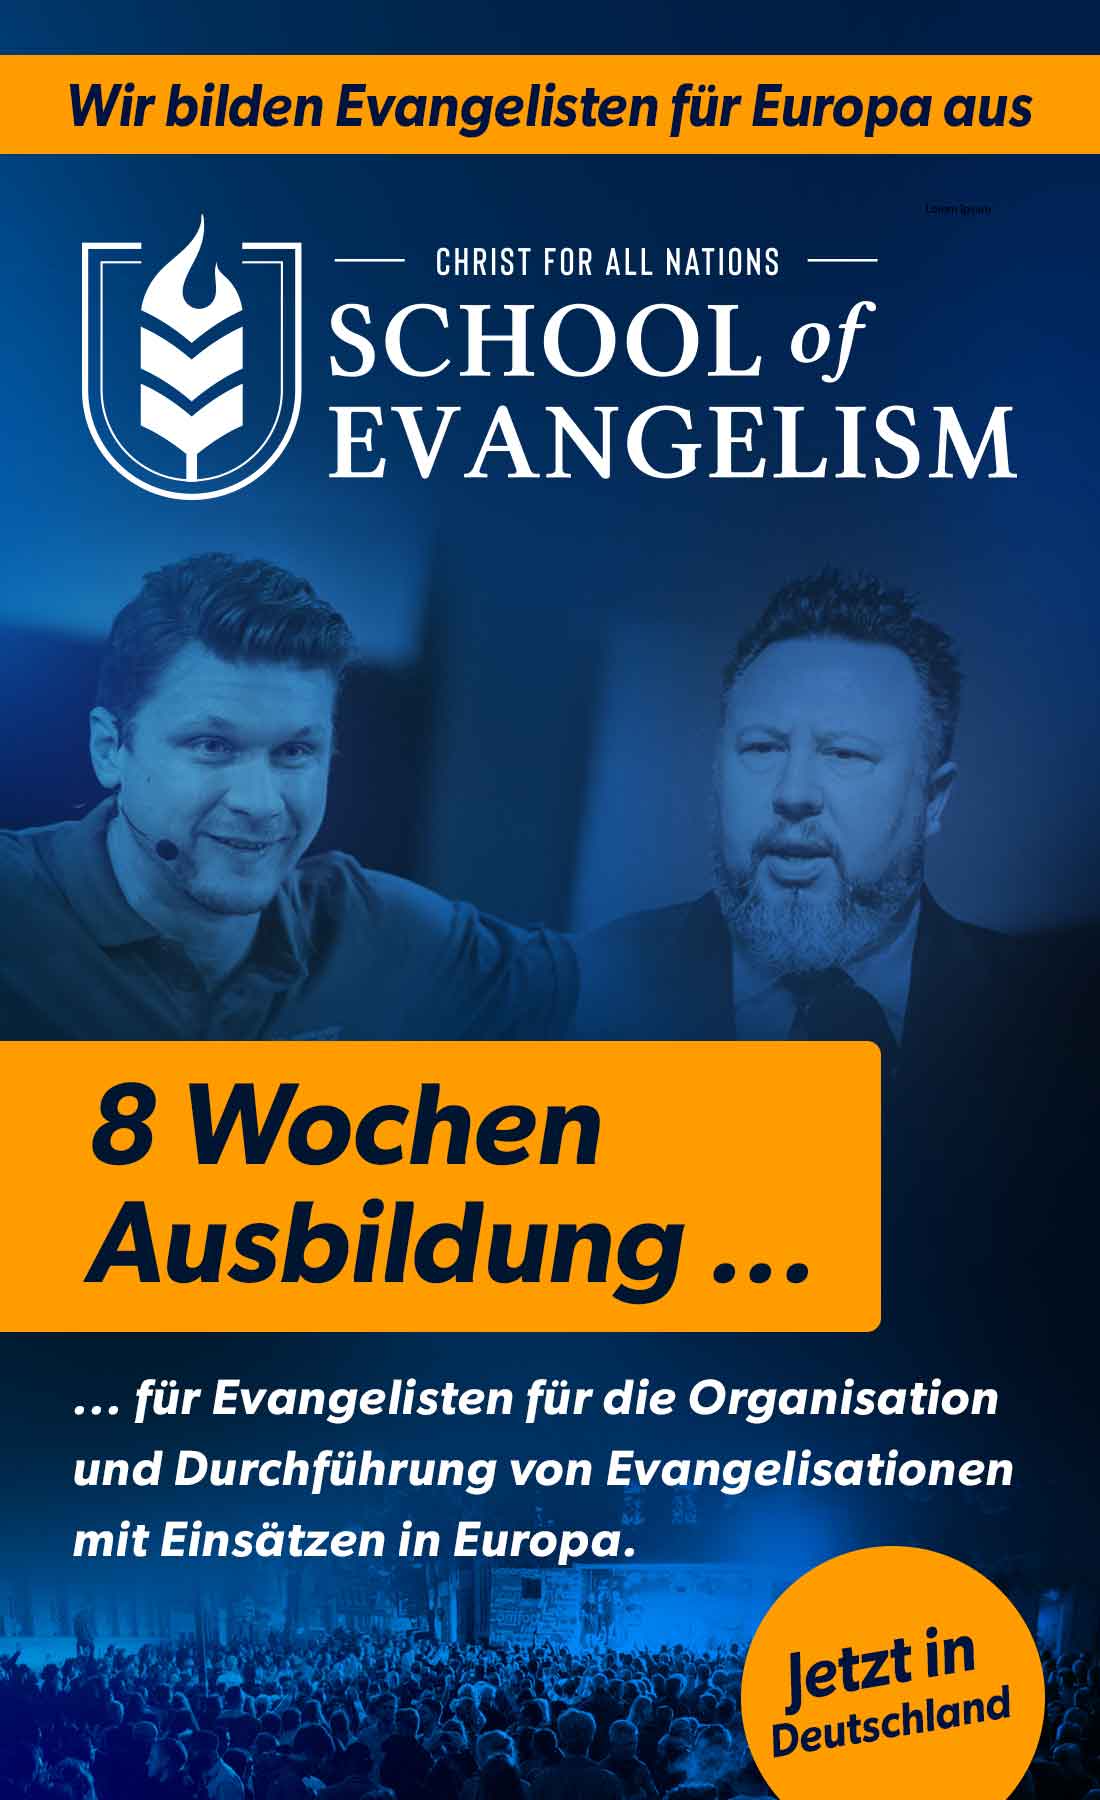 School of Evangelism mit Daniel Kolenda und Levi Lutz